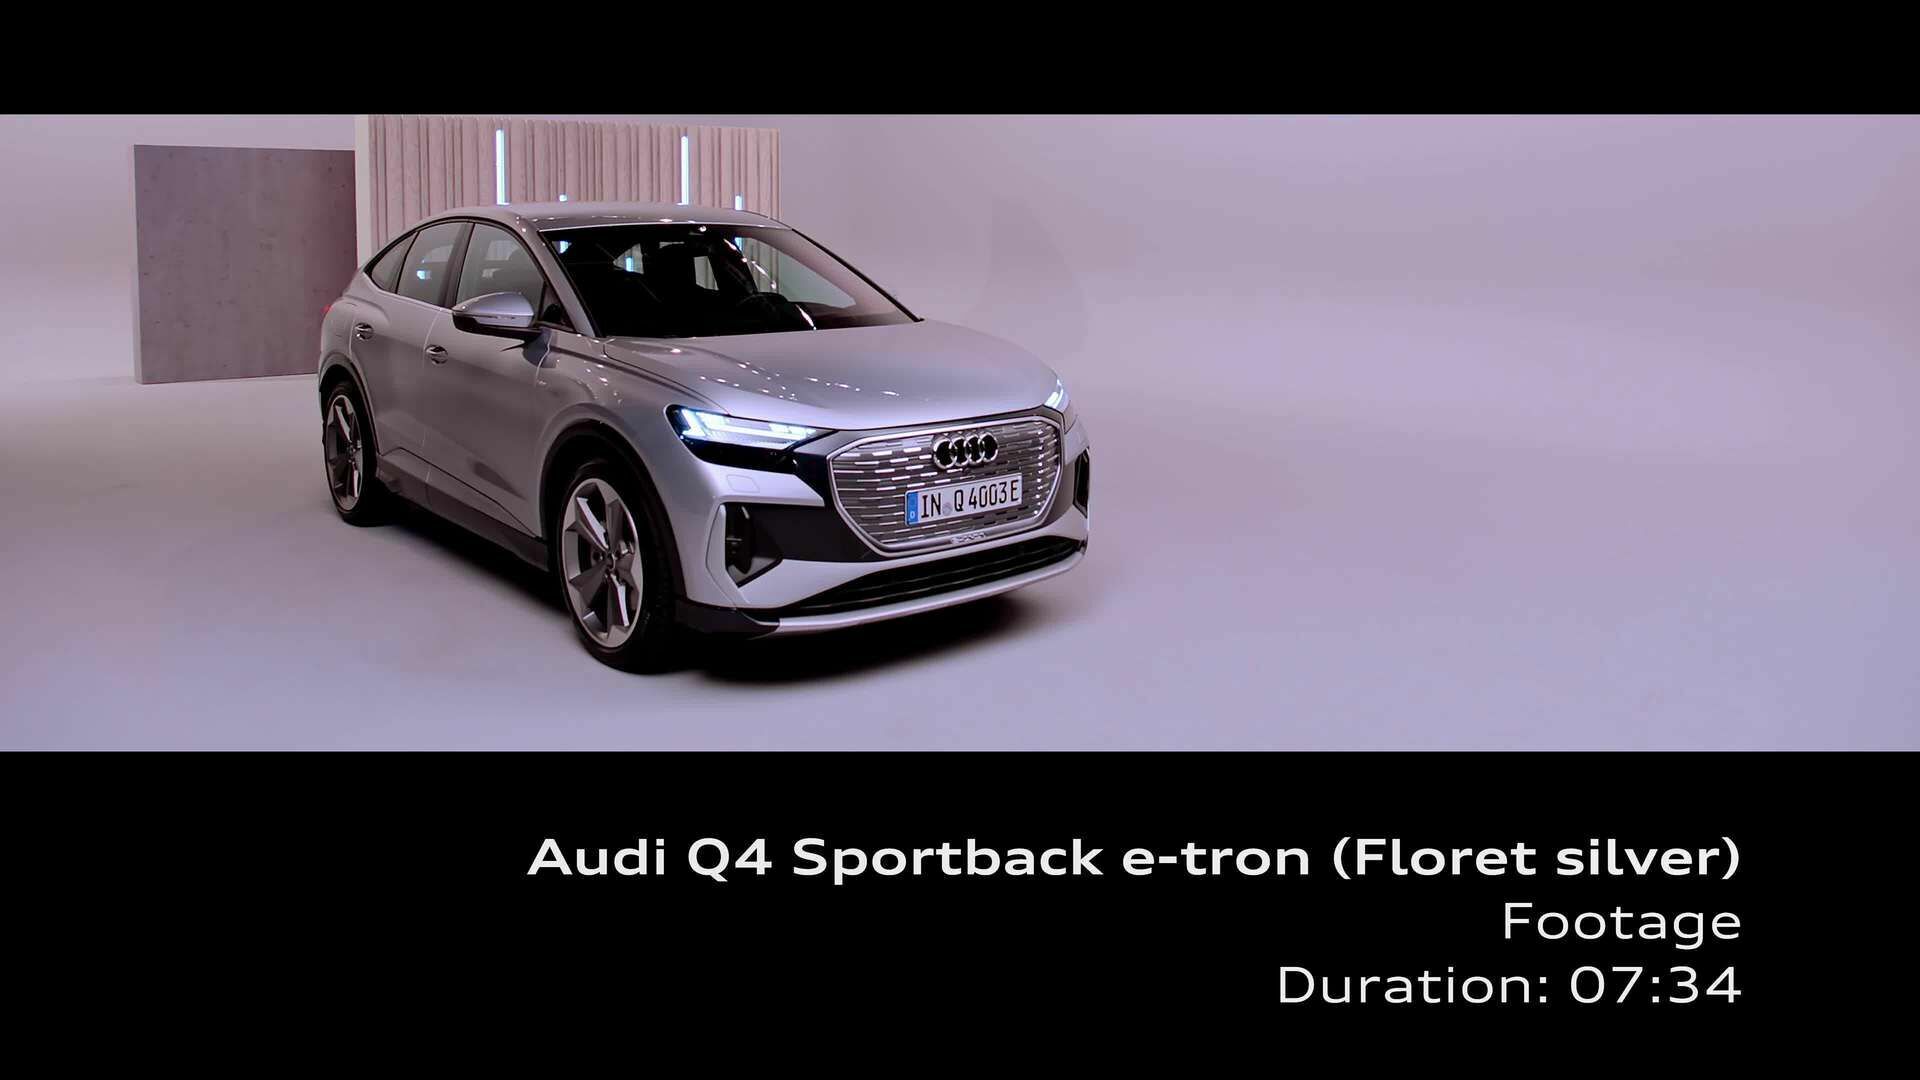 Studio Footage: Audi Q4 Sportback e-tron Floret silver